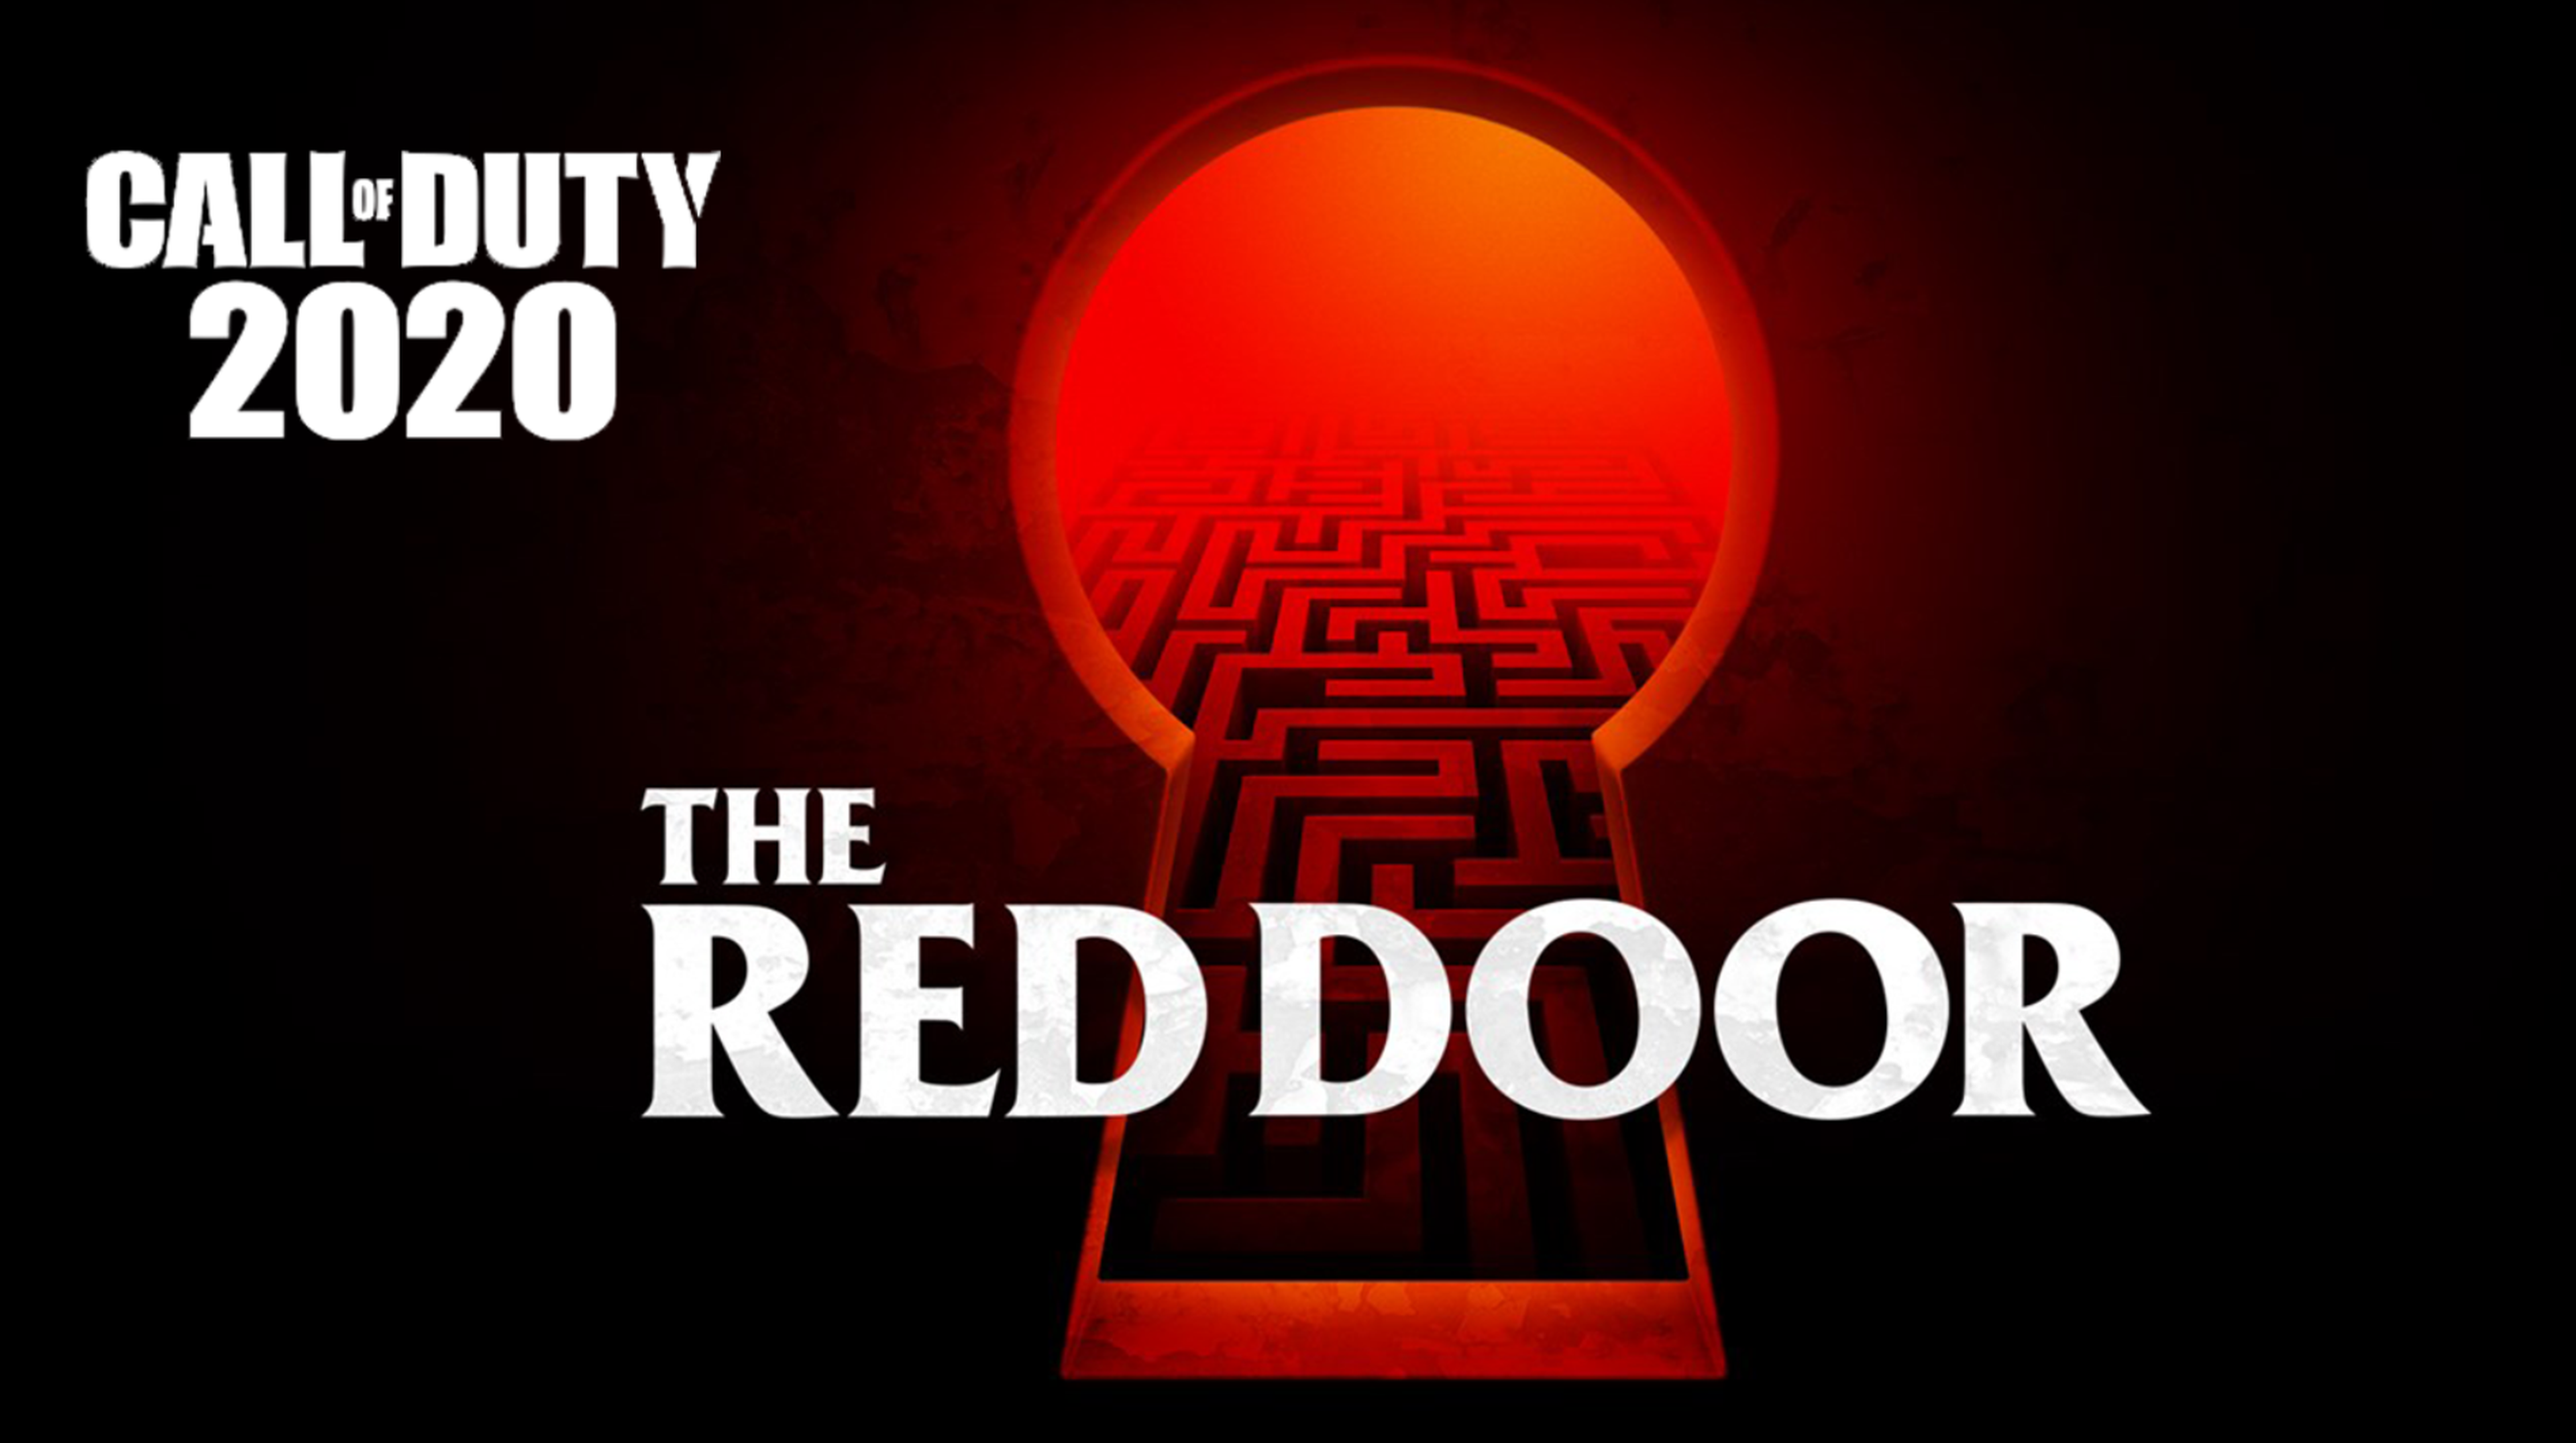 Call of Duty 2020 'Red Door'